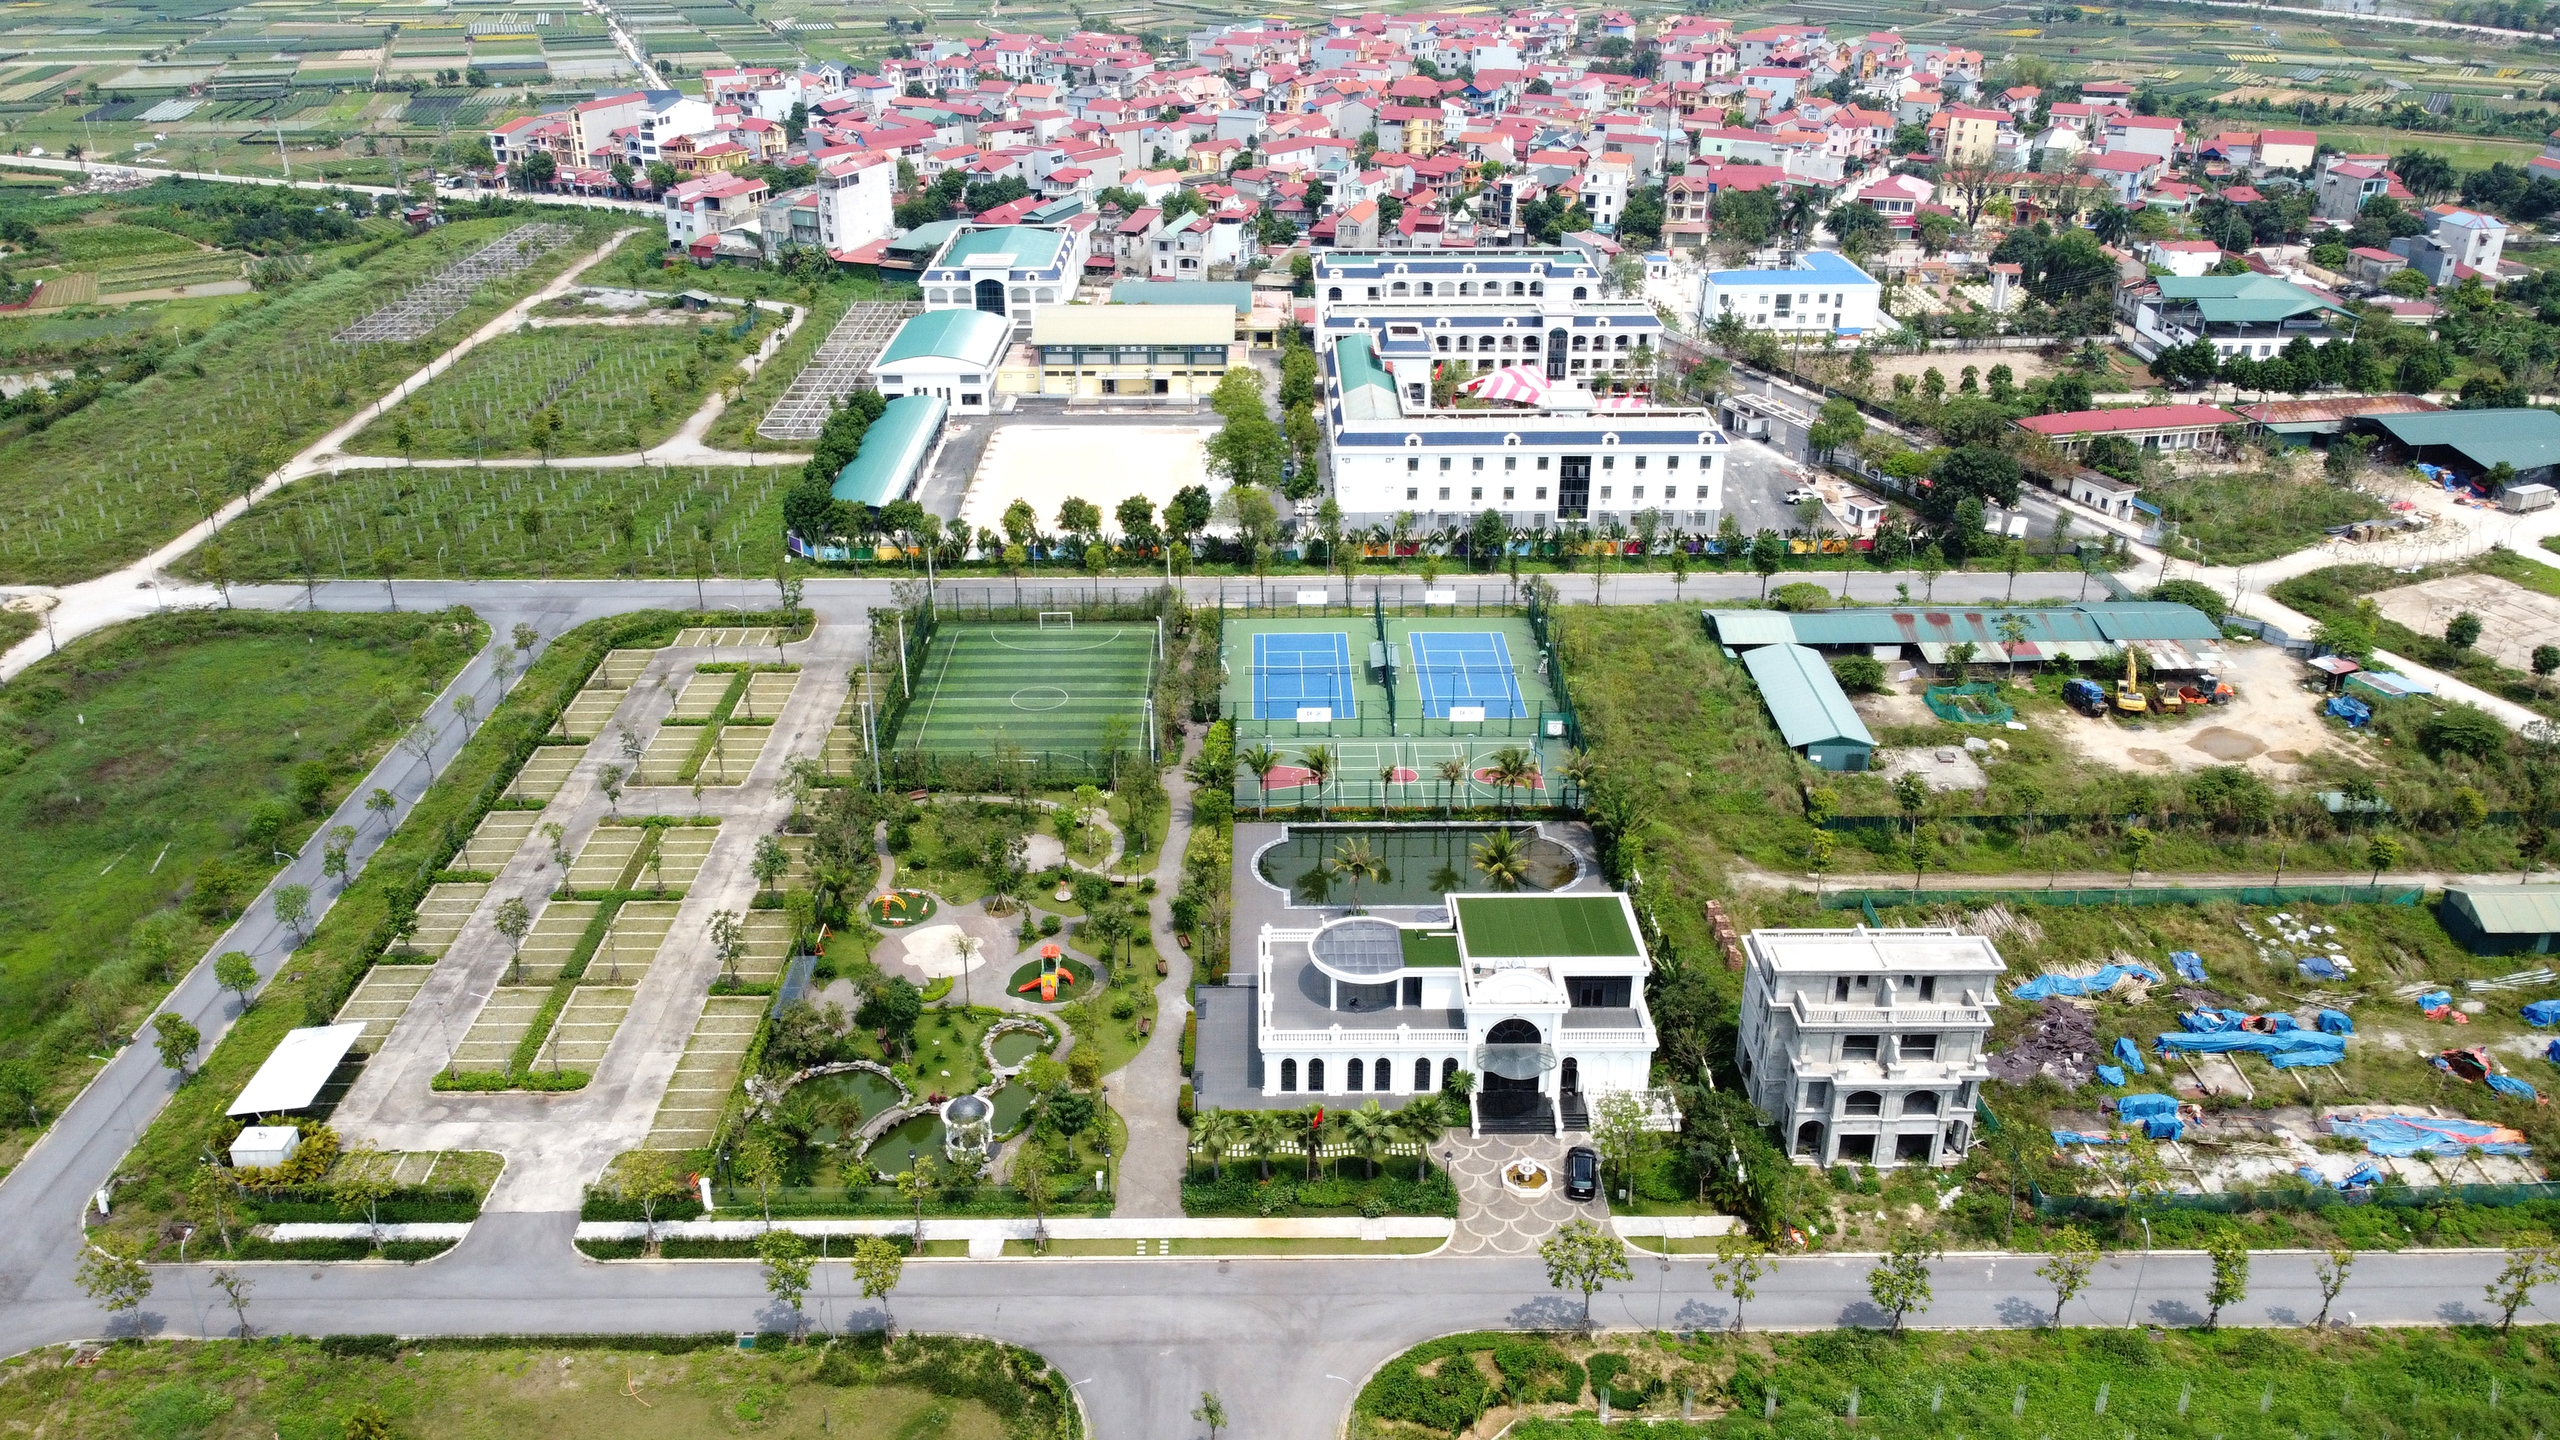 Cỏ mọc phủ dự án bất động sản nghìn tỷ ở Hà Nội- Ảnh 4.